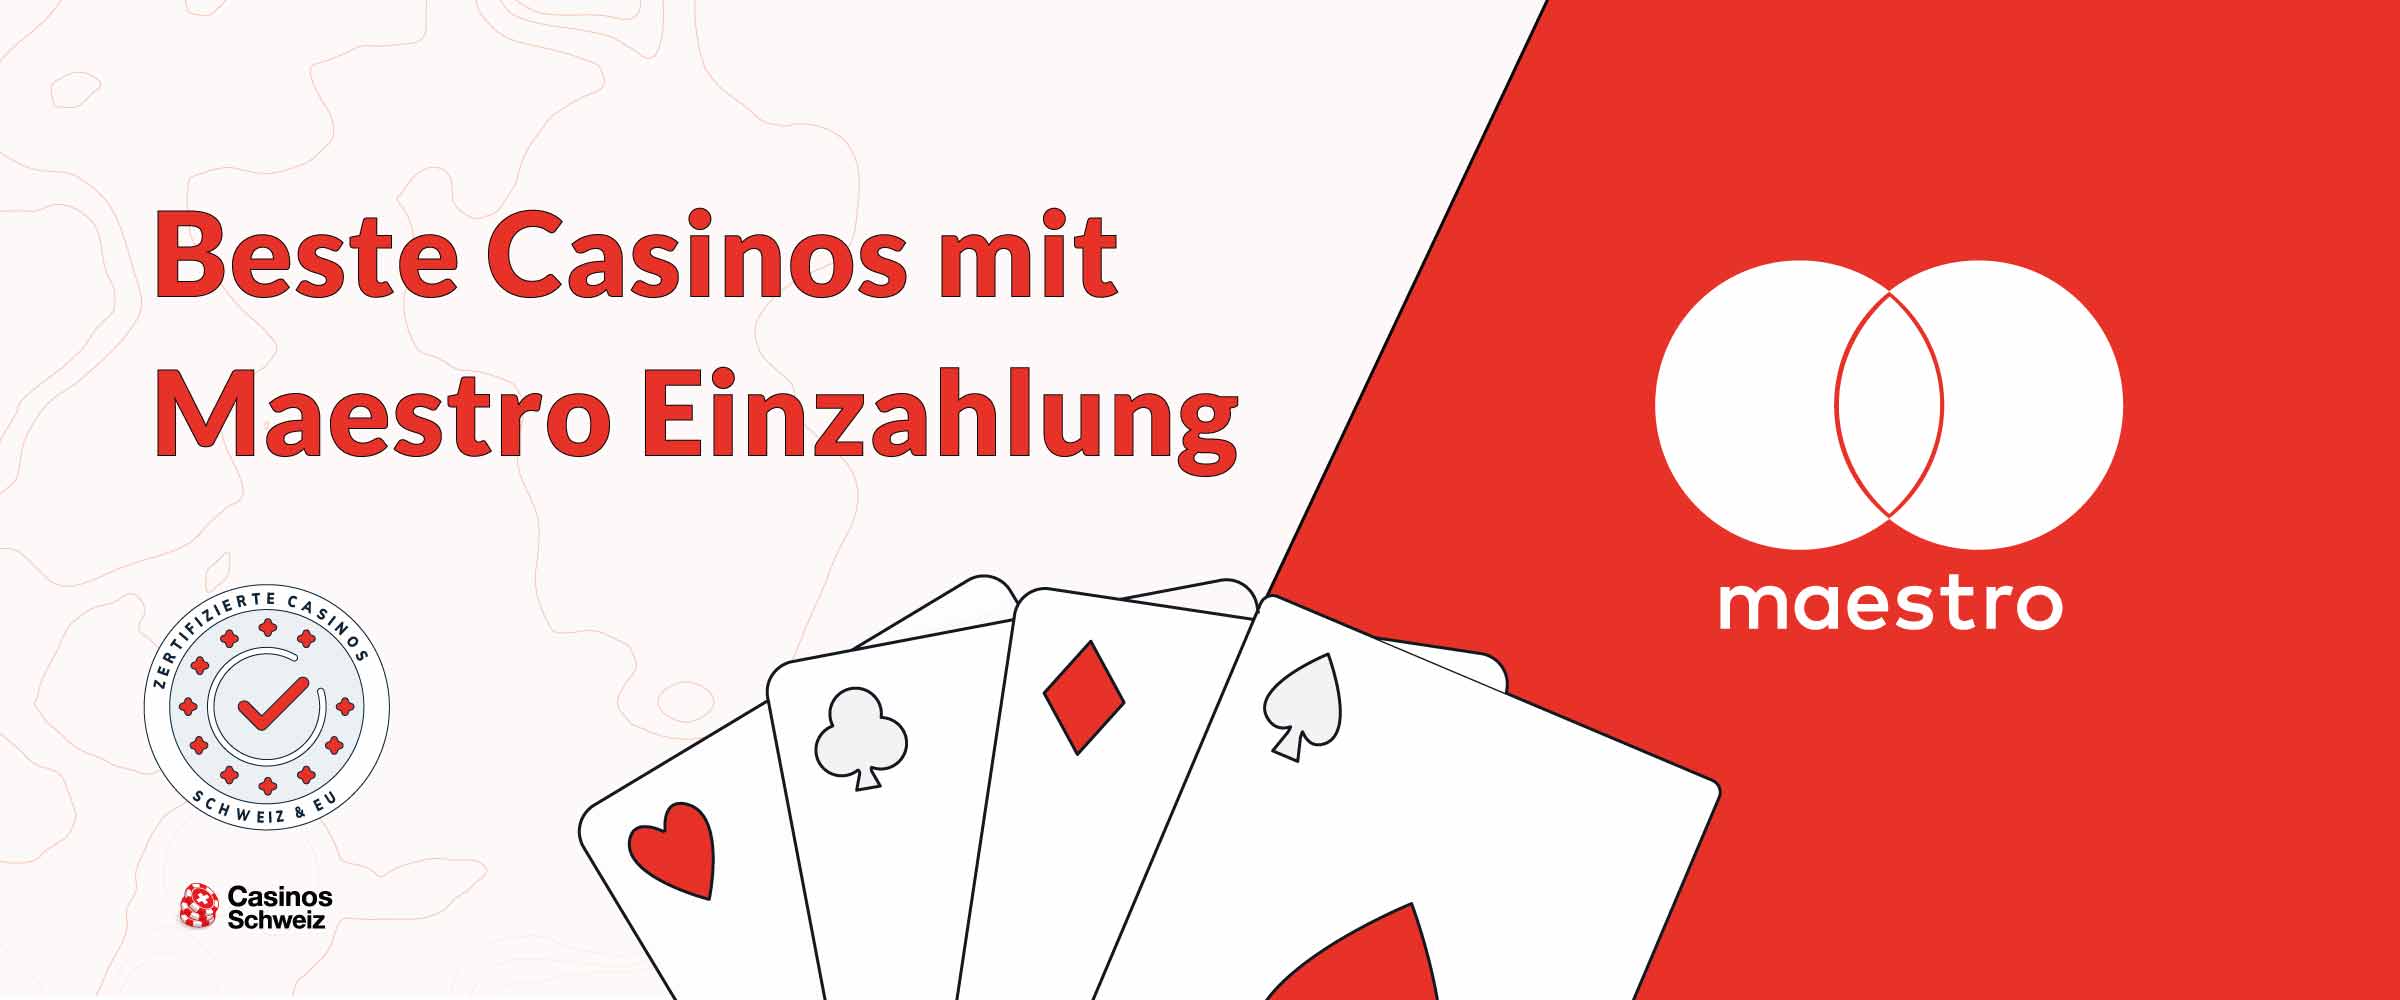 Beste Casinos mit Maestro Einzahlung